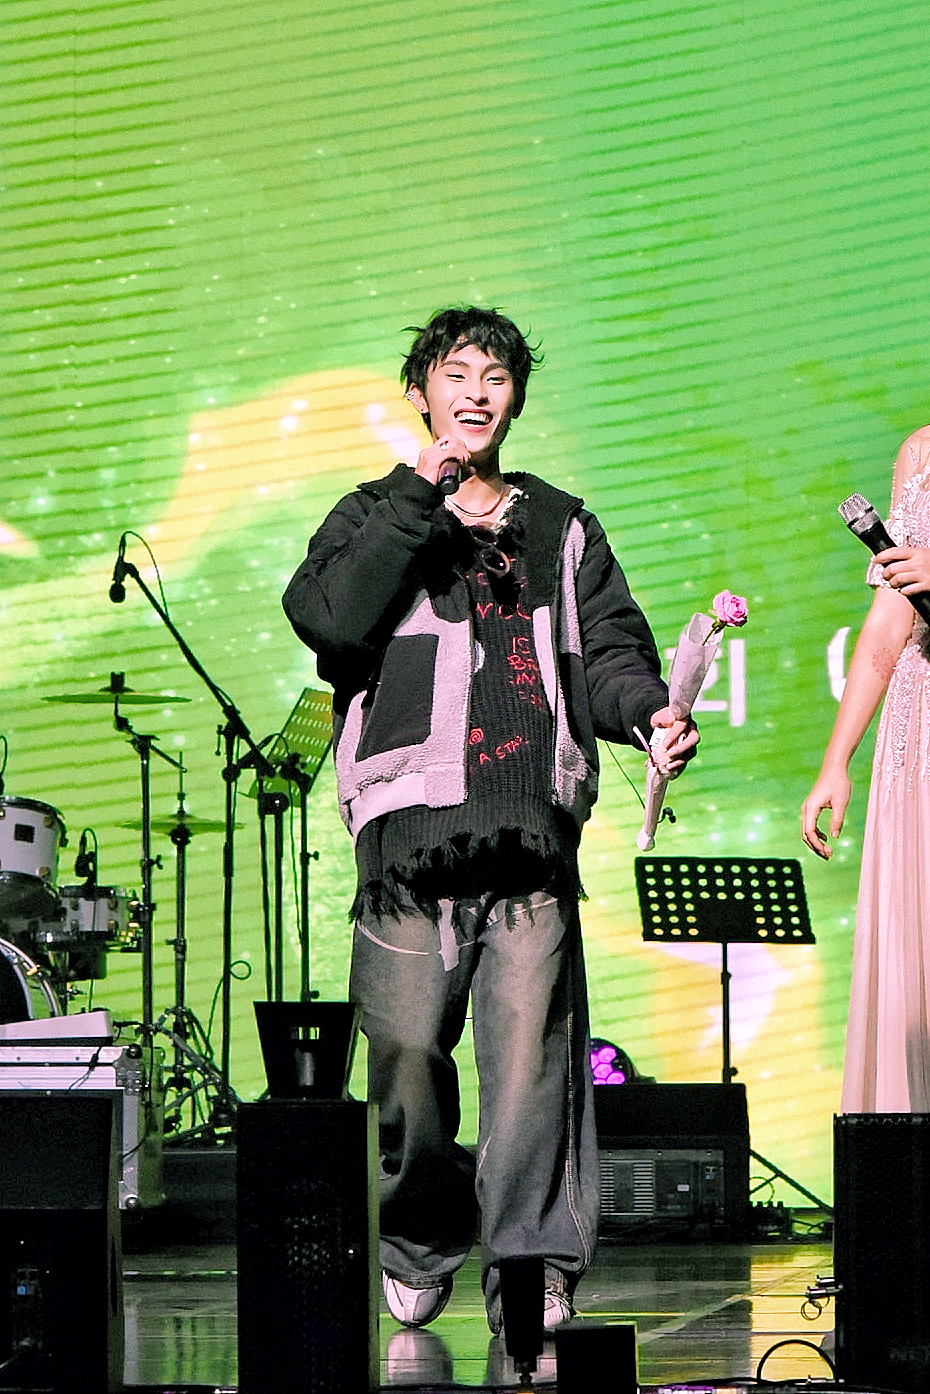 Chủ nhân hit 'Thích em hơi nhiều' khuấy động sân khấu tại Hàn Quốc  - Ảnh 7.